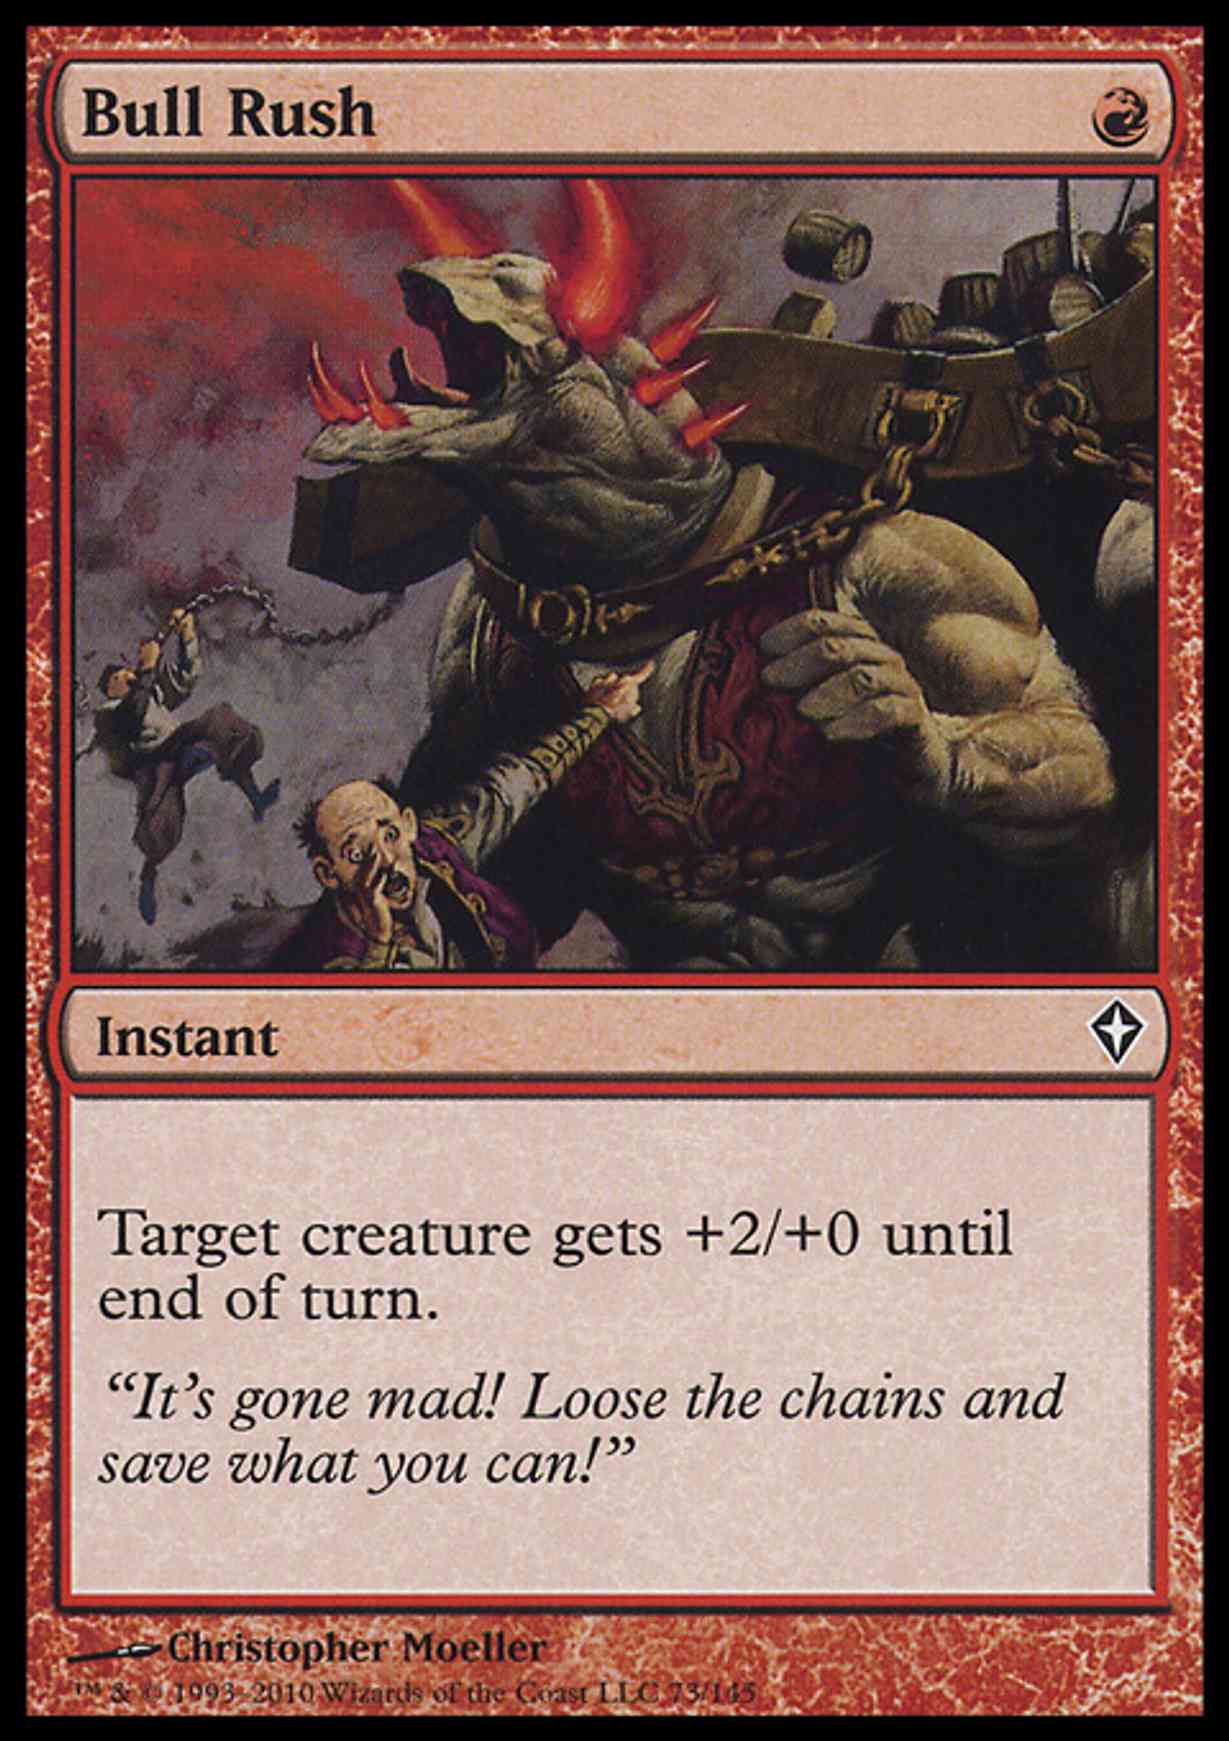 Bull Rush magic card front